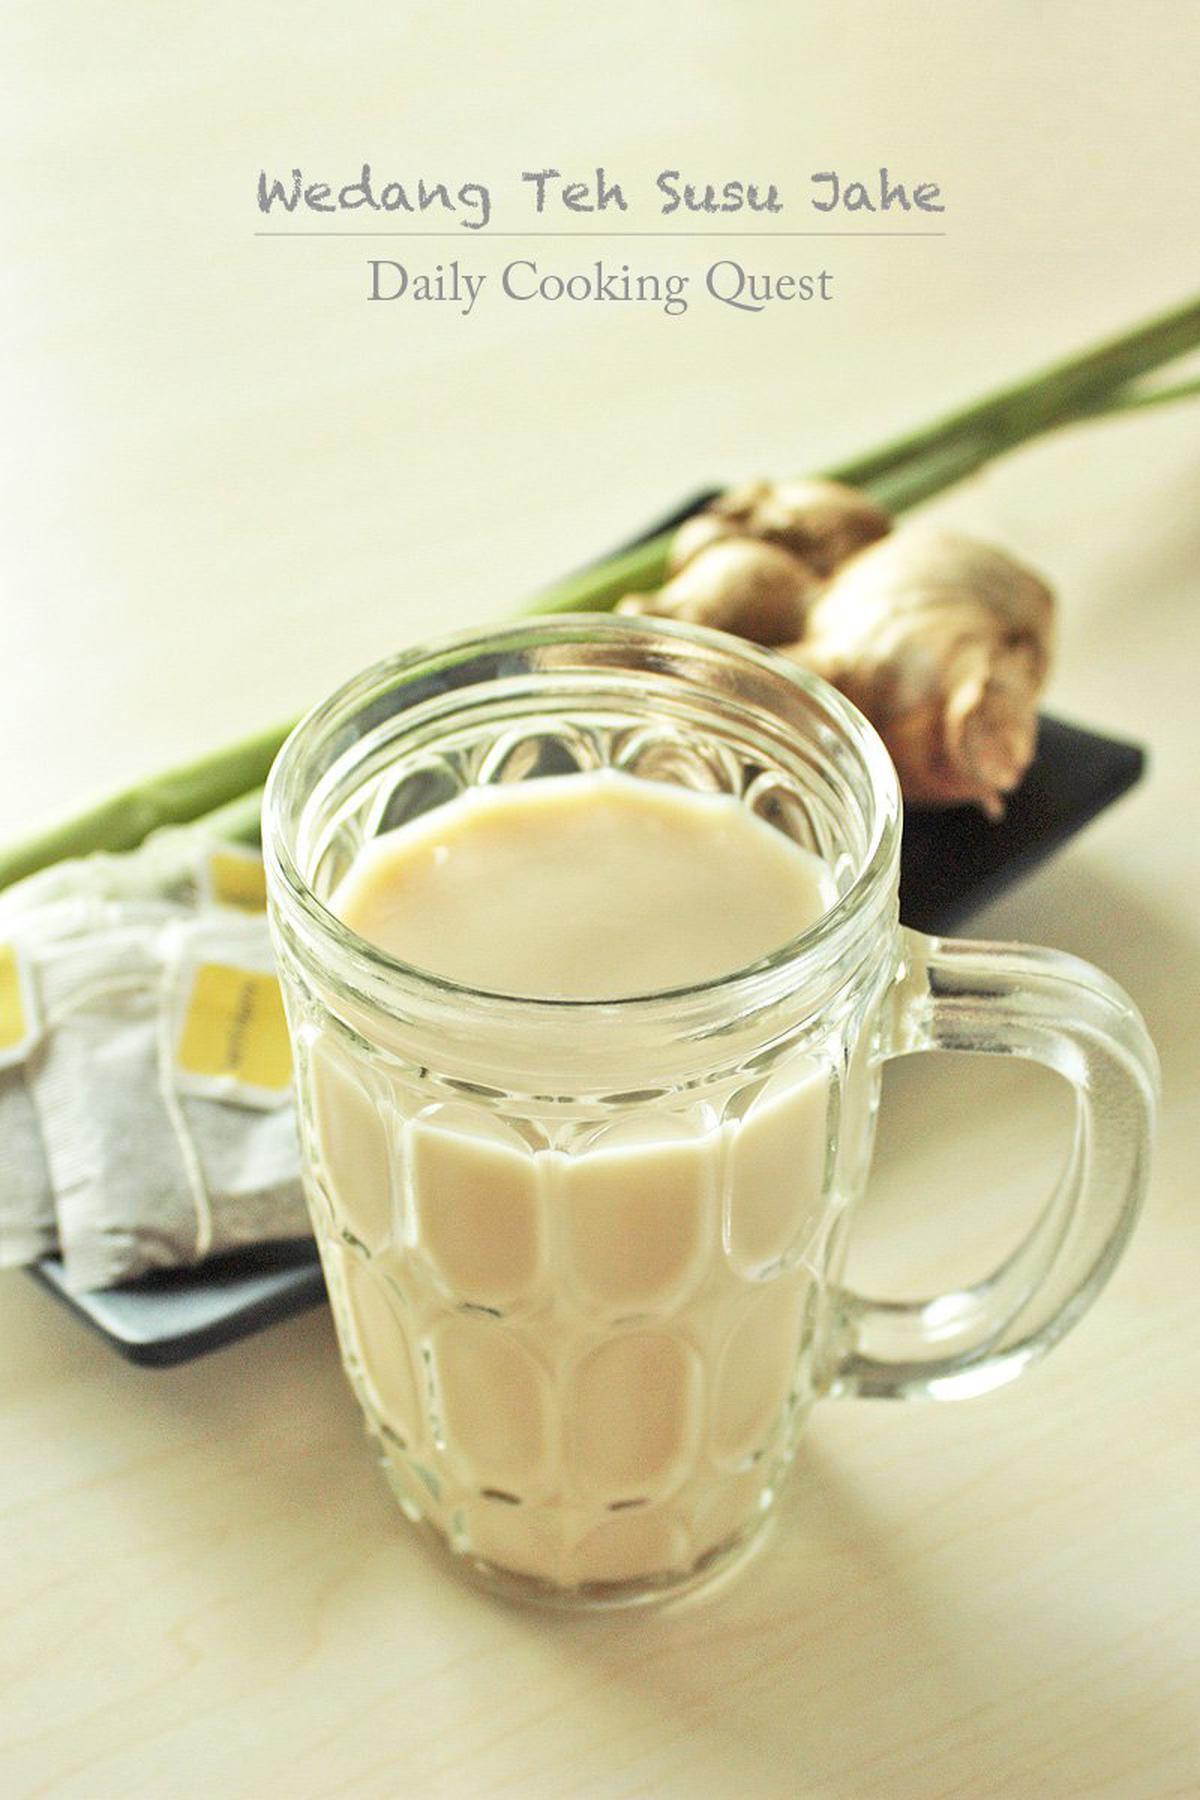 Wedang Teh Susu Jahe - Ginger Milk Tea